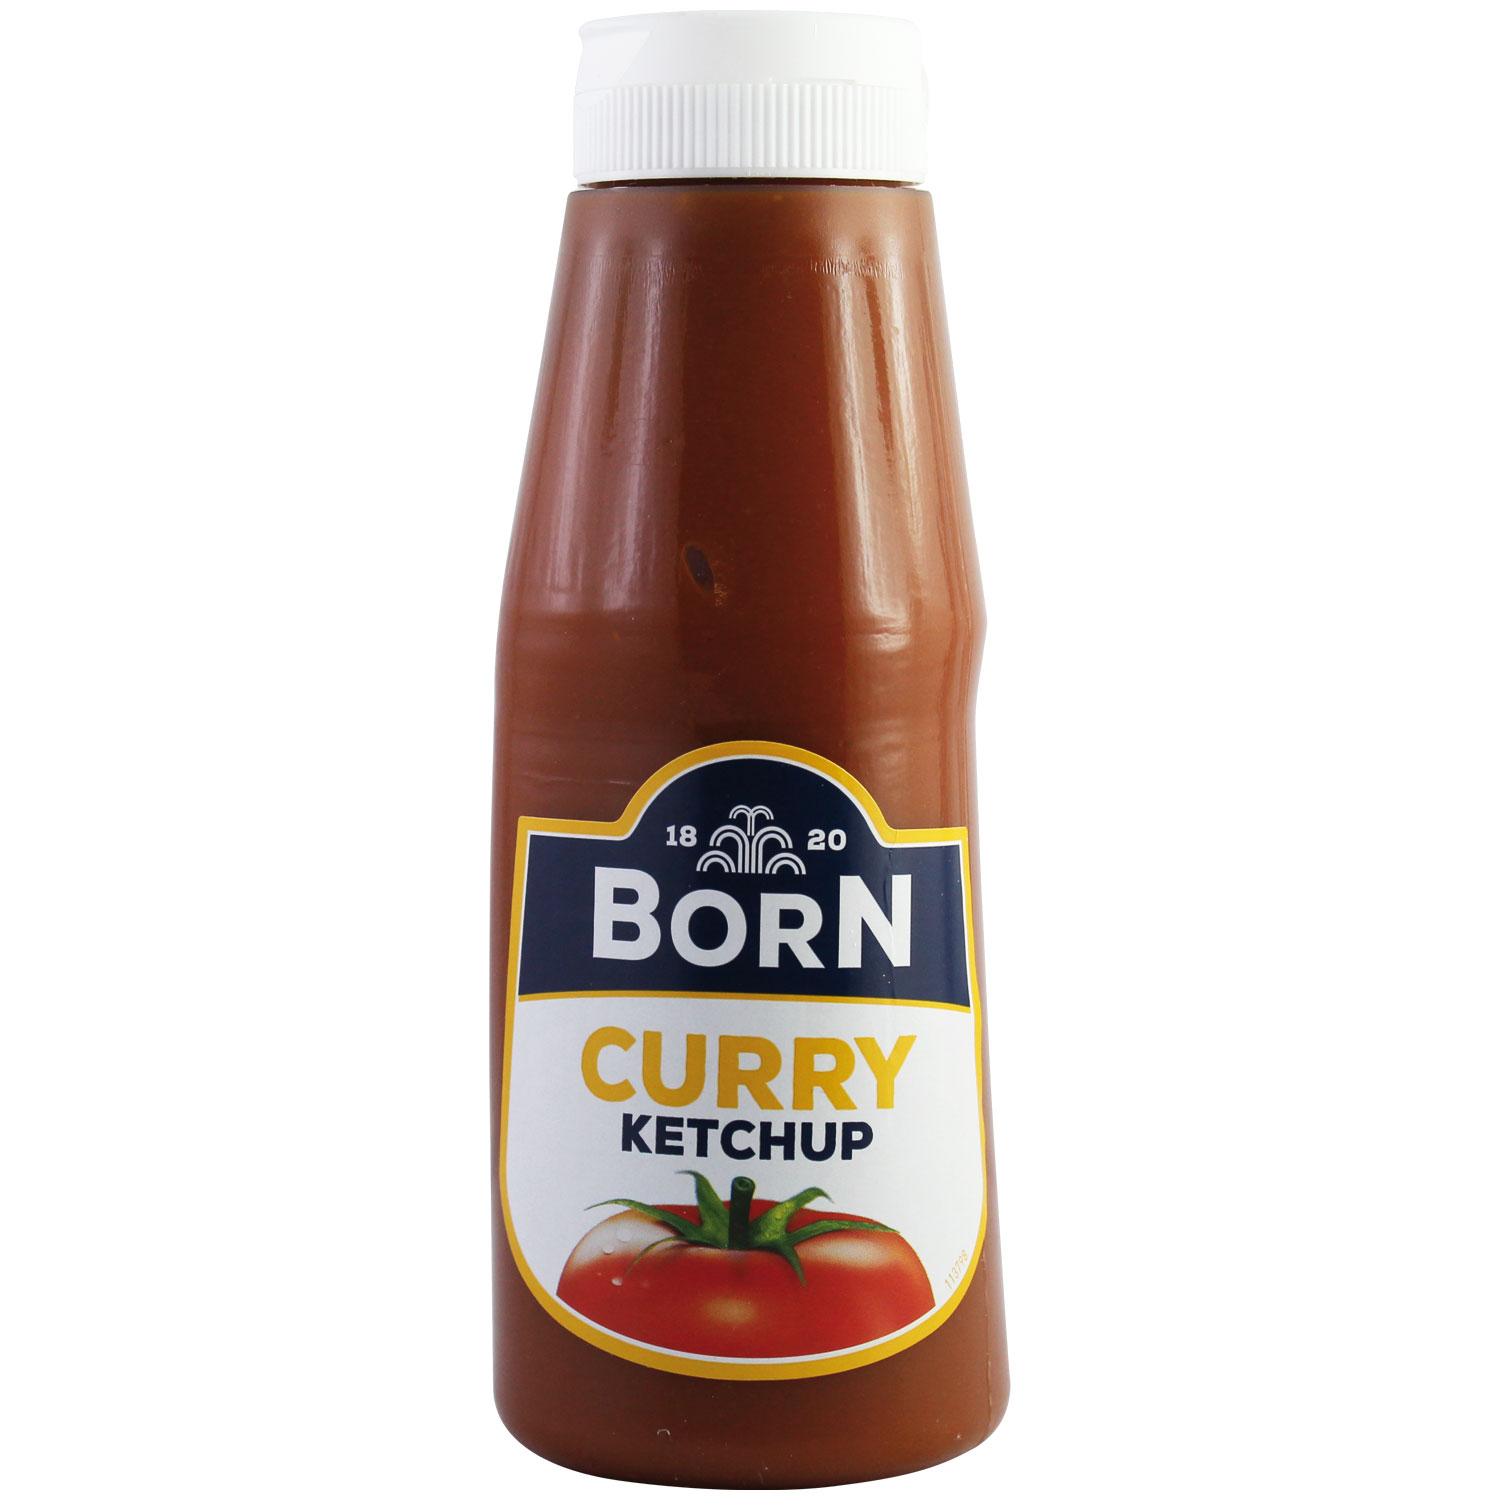 Ossikiste.de | Born Curry Ketchup 300 ml | online kaufen